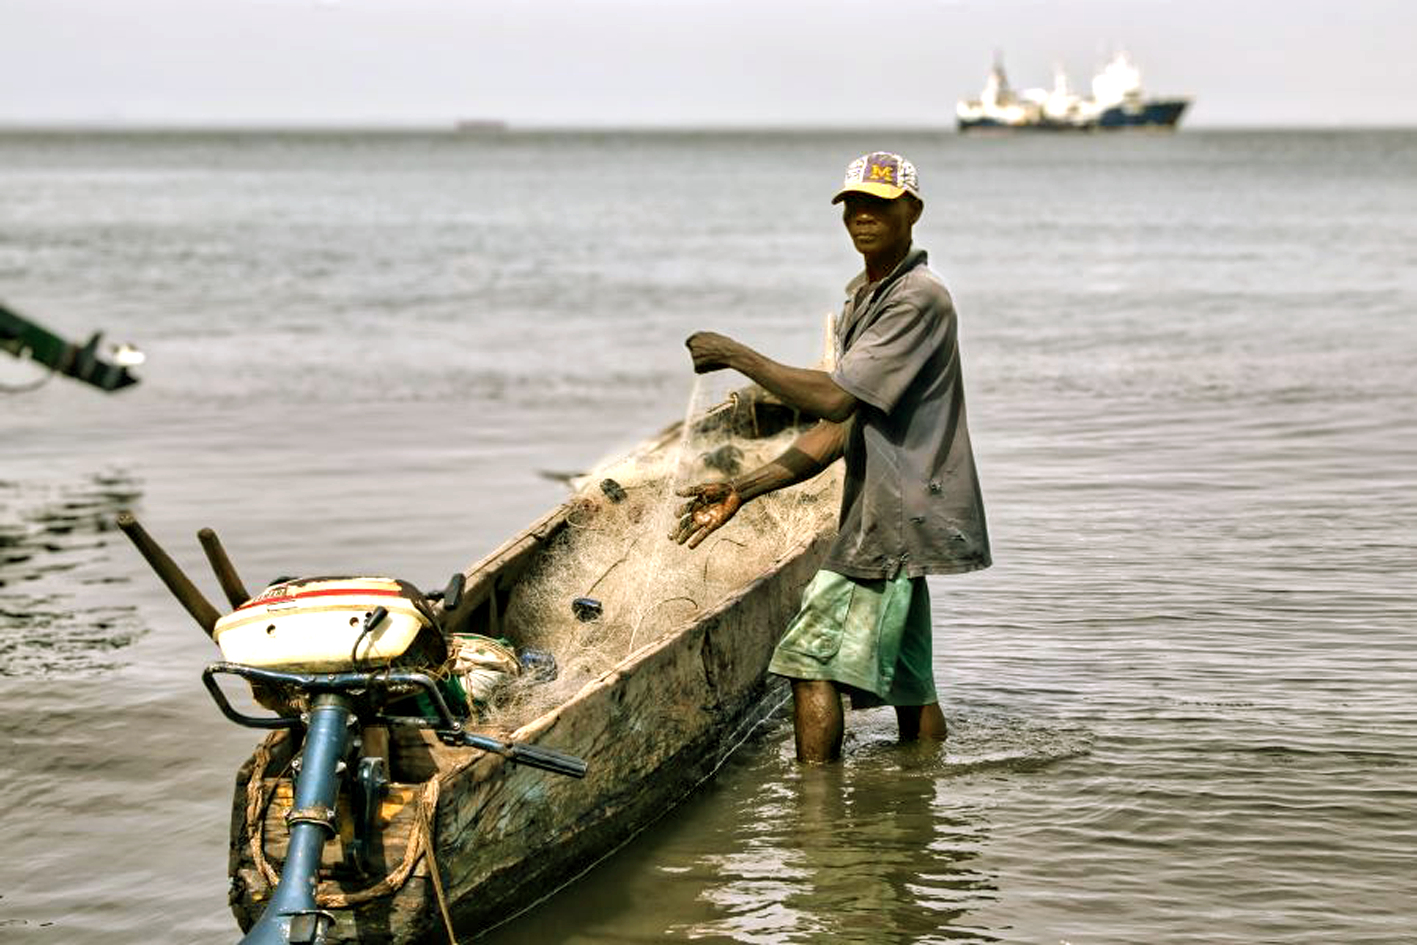 Tình trạng số lượng cá ở các biển, đại dương sụt giảm nhanh đang ảnh hưởng lớn đến sinh kế của các ngư dân đánh bắt nhỏ lẻ. Ảnh chụp tại Sierra Leone - ẢNH: Unsplash UNSPLASH